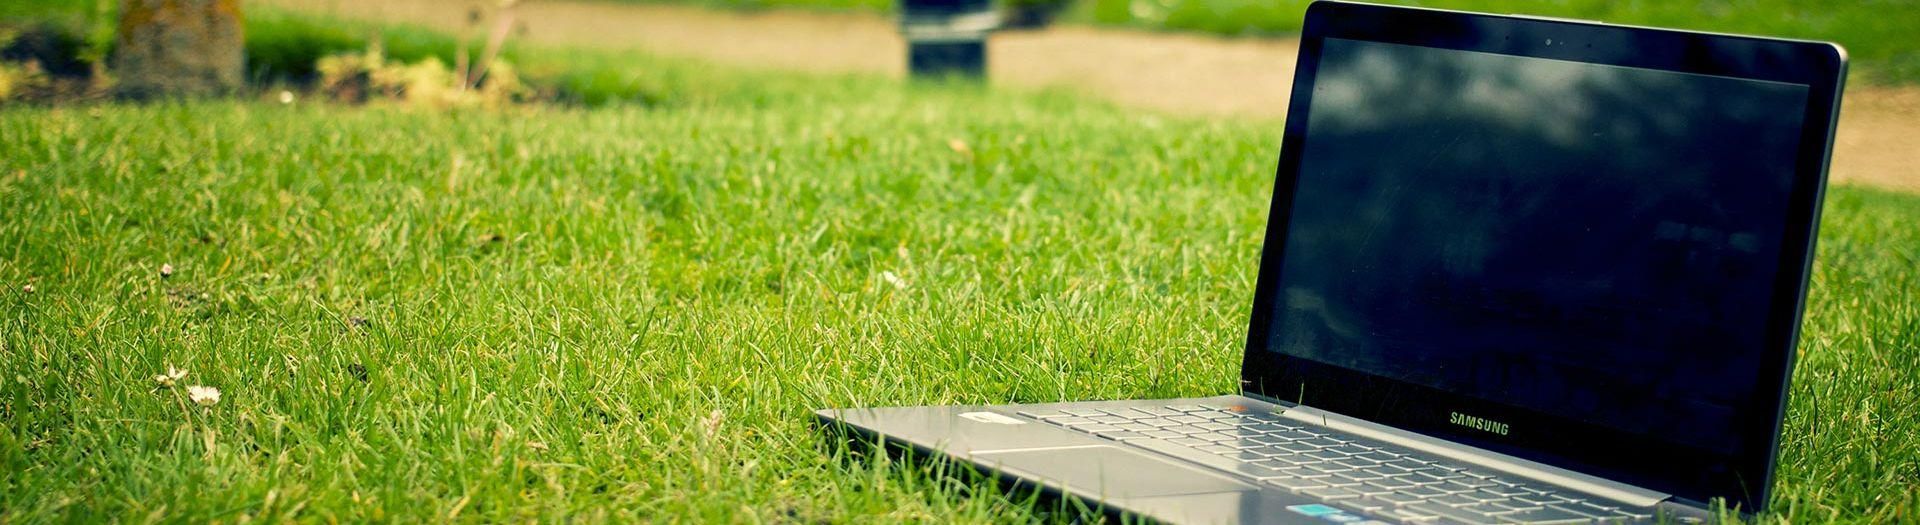 laptop-notebook-grass-meadow-9b558d75 Sortier system  